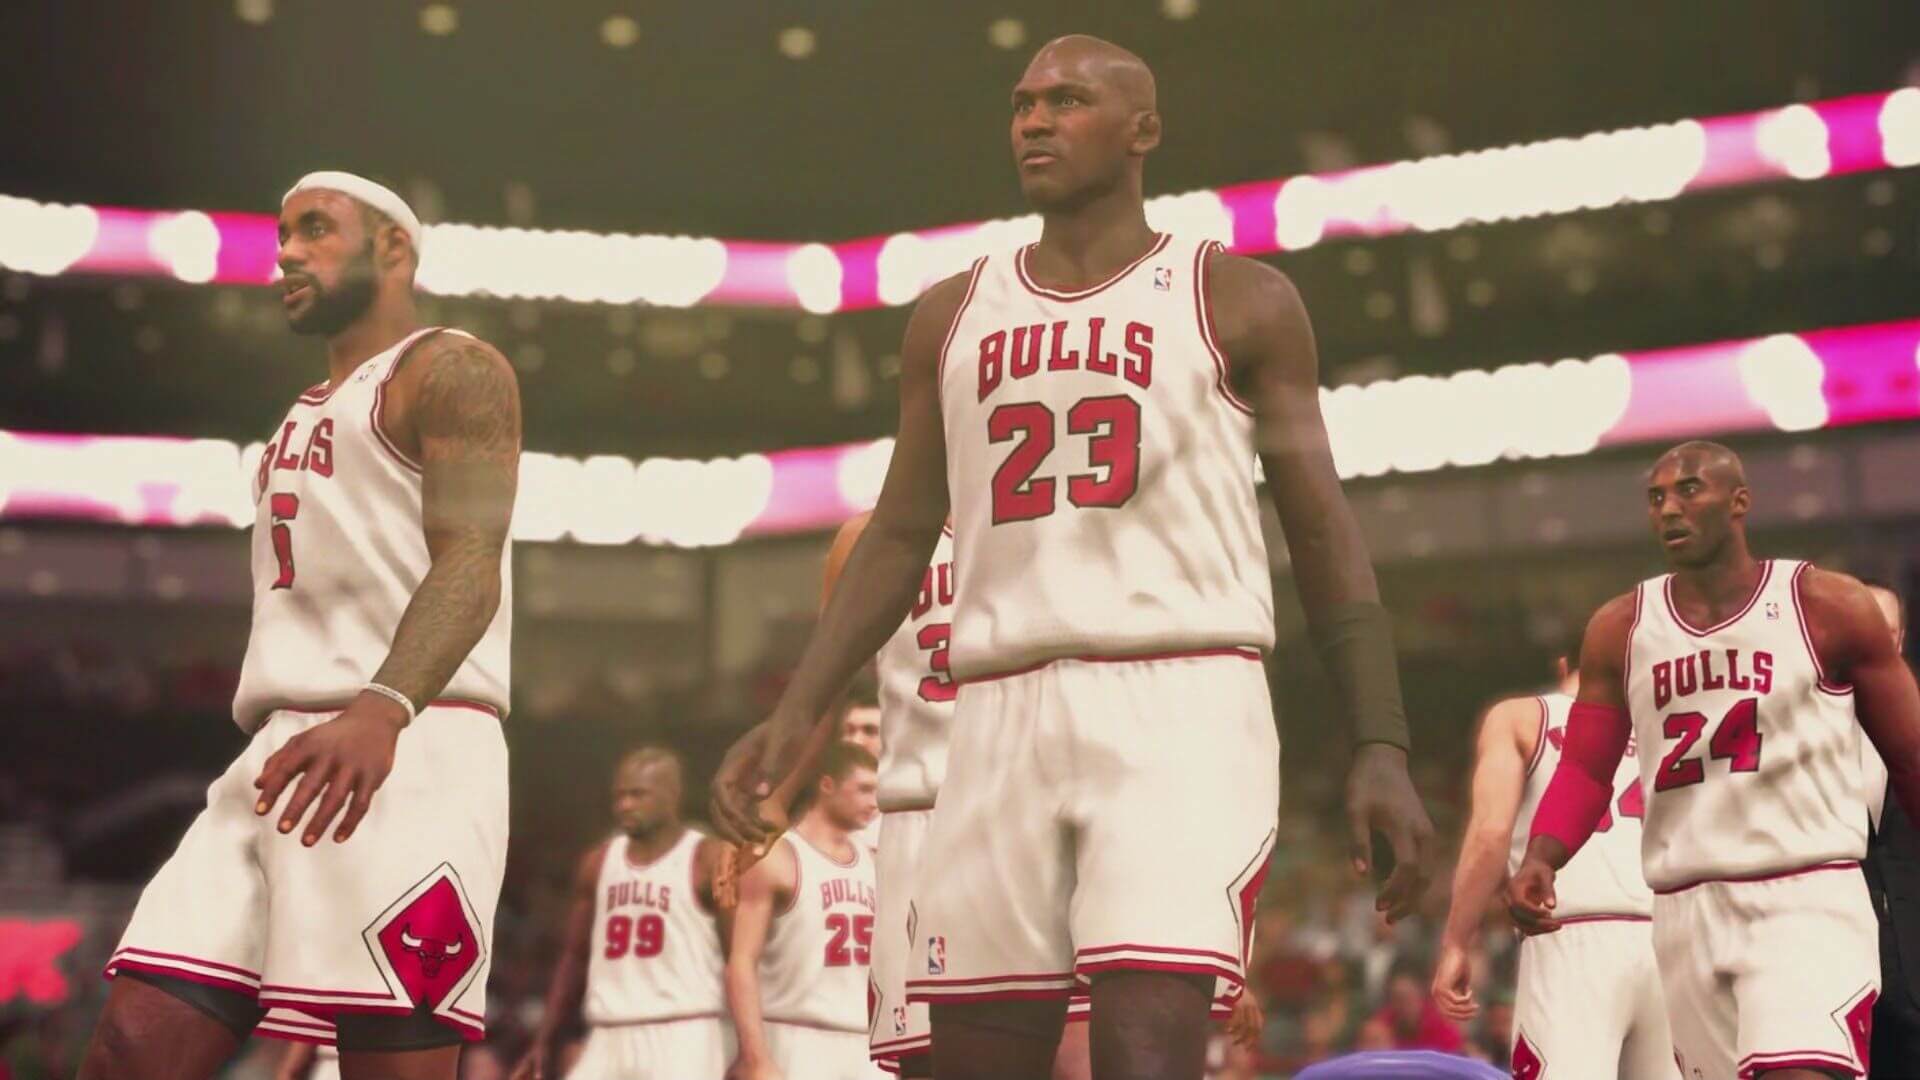 خرید بازی NBA2K19 برای PS4